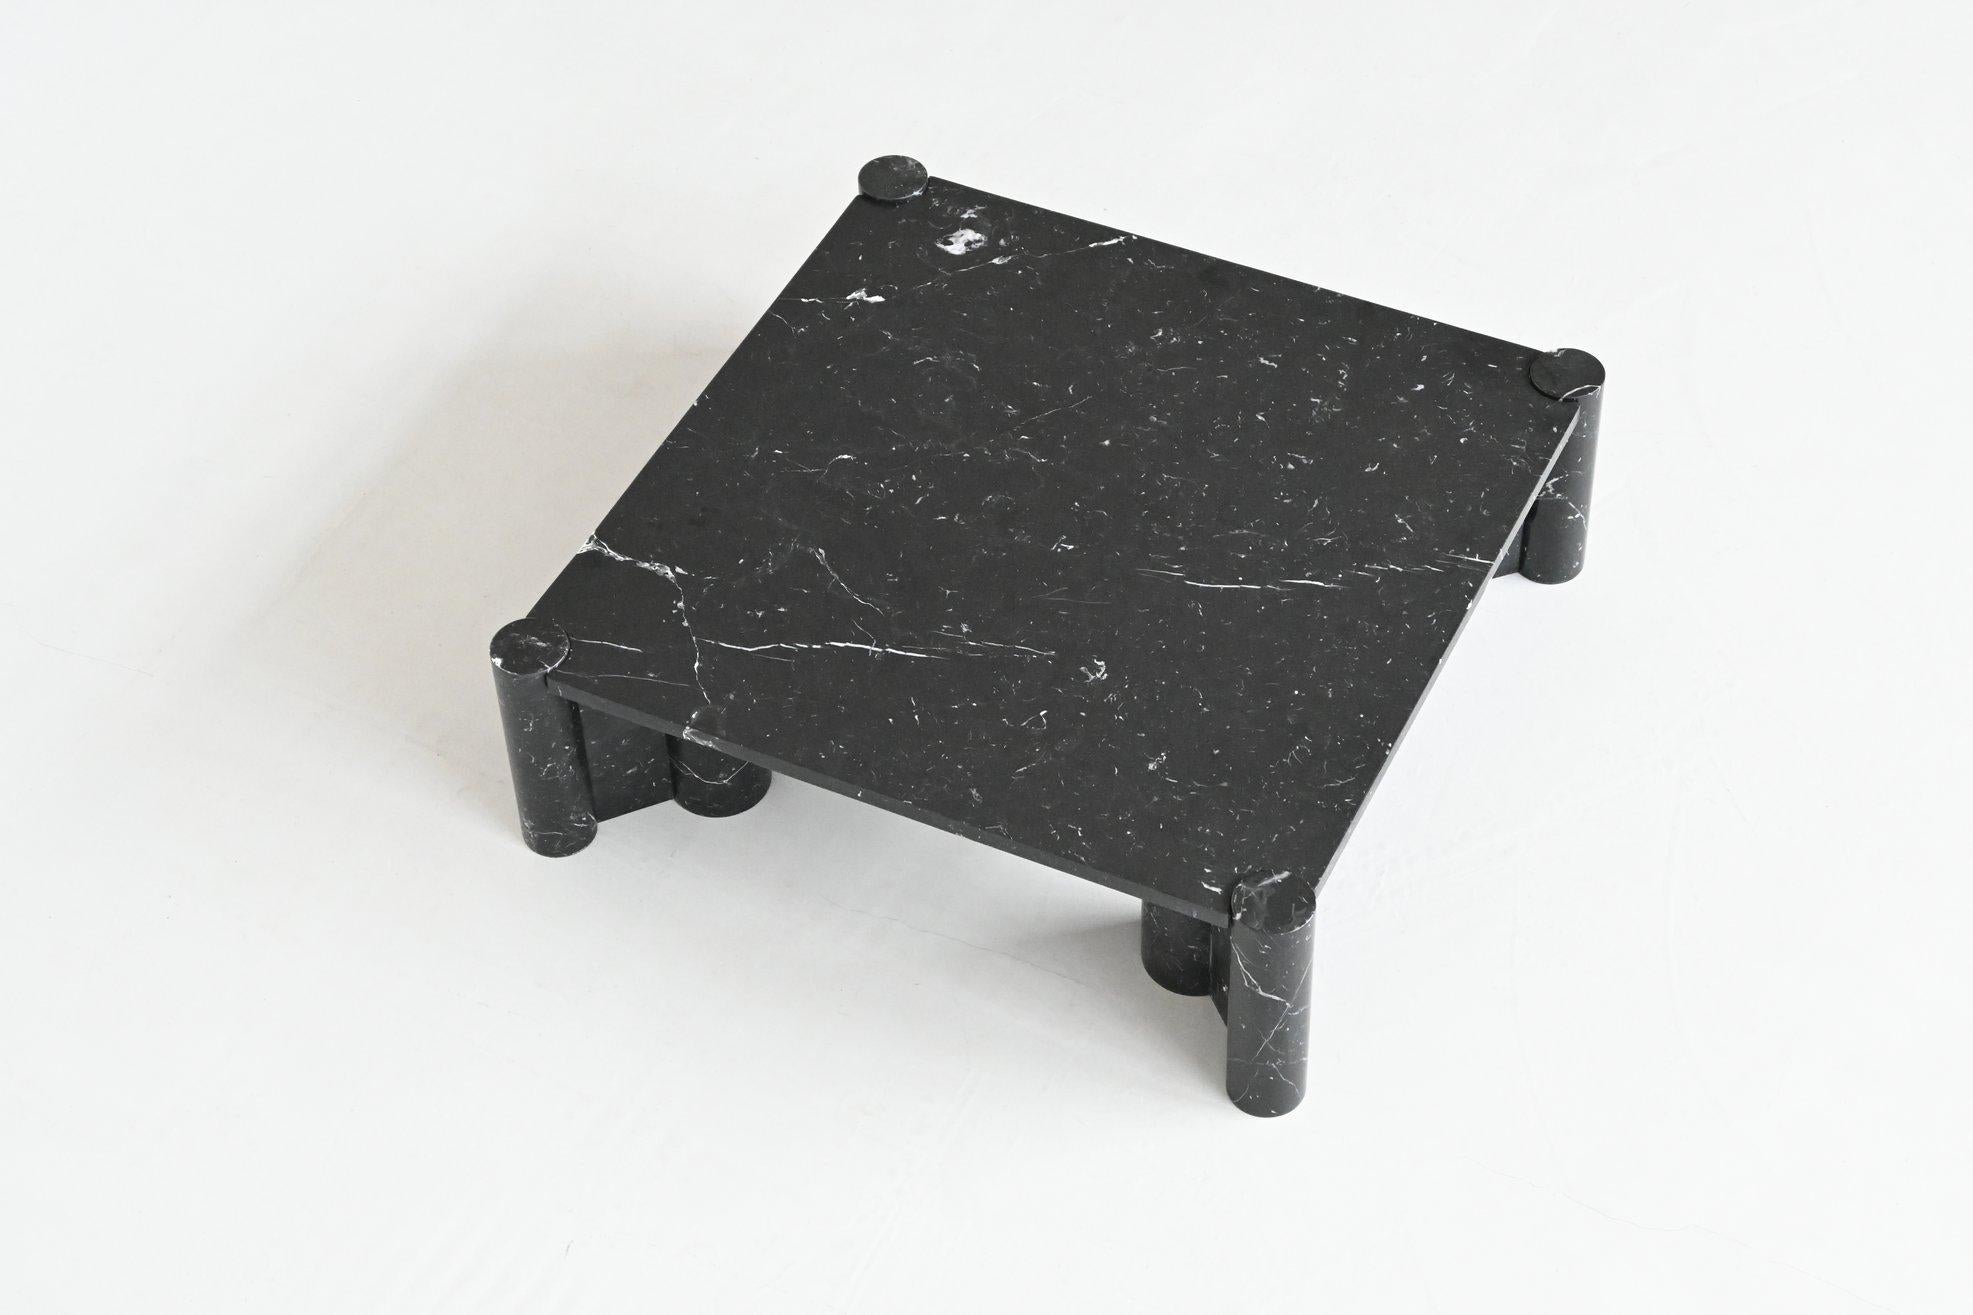 Gae Aulenti Jumbo coffee table black marble Knoll International Italy 1965 For Sale 3